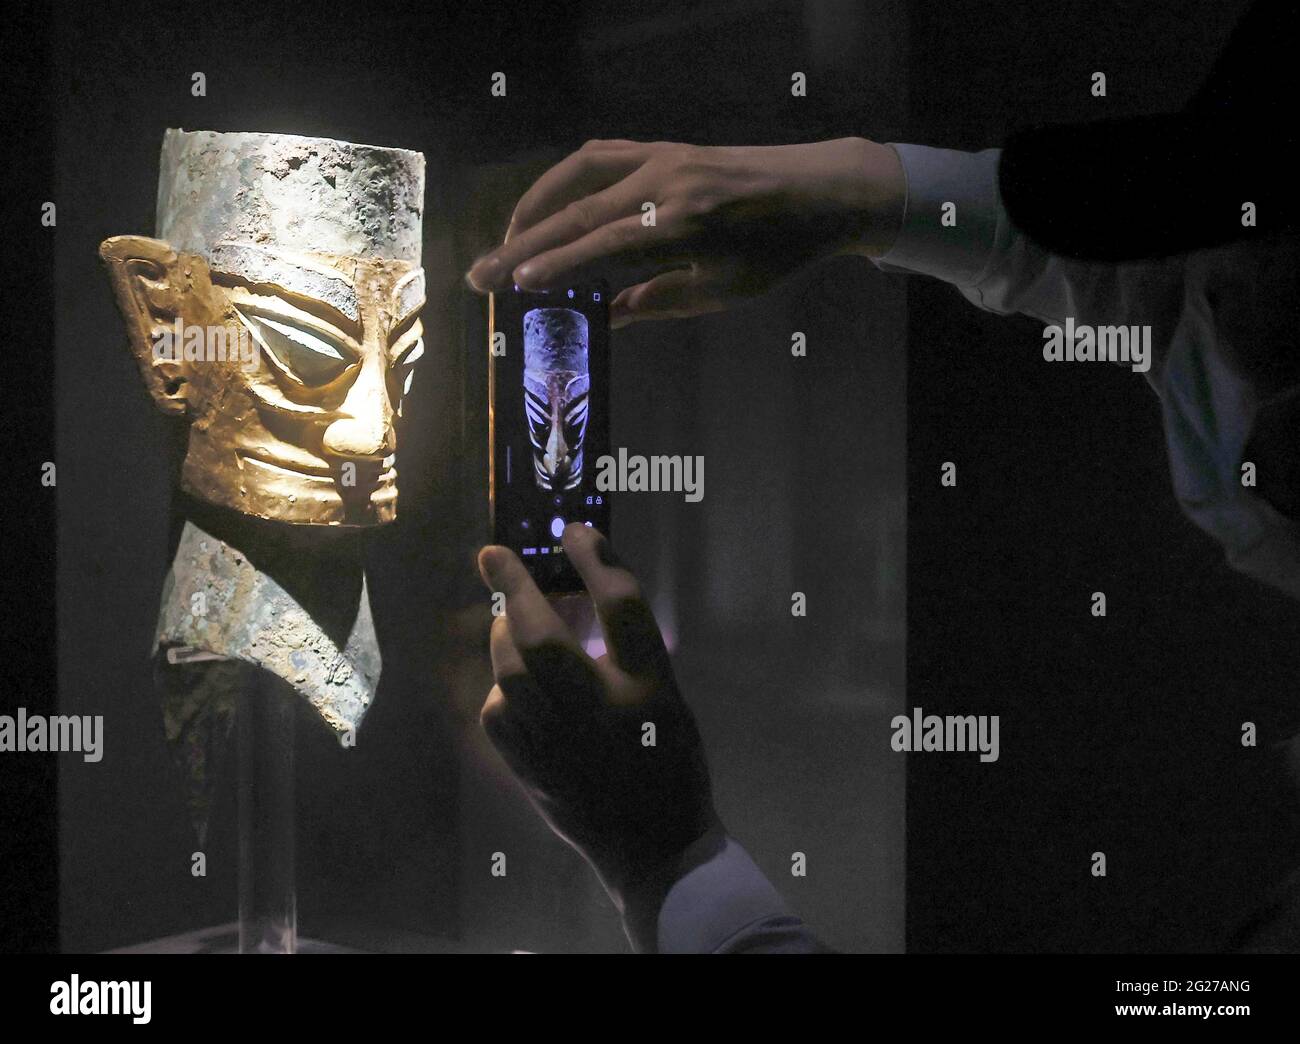 Shanghai, China. Juni 2021. Am 08. Juni 2021 findet in Shanghai, China, die Ausstellung „Unearthed Relics“ von Sanxingdui statt.(Foto: TPG/cnsphotos) Quelle: TopPhoto/Alamy Live News Stockfoto